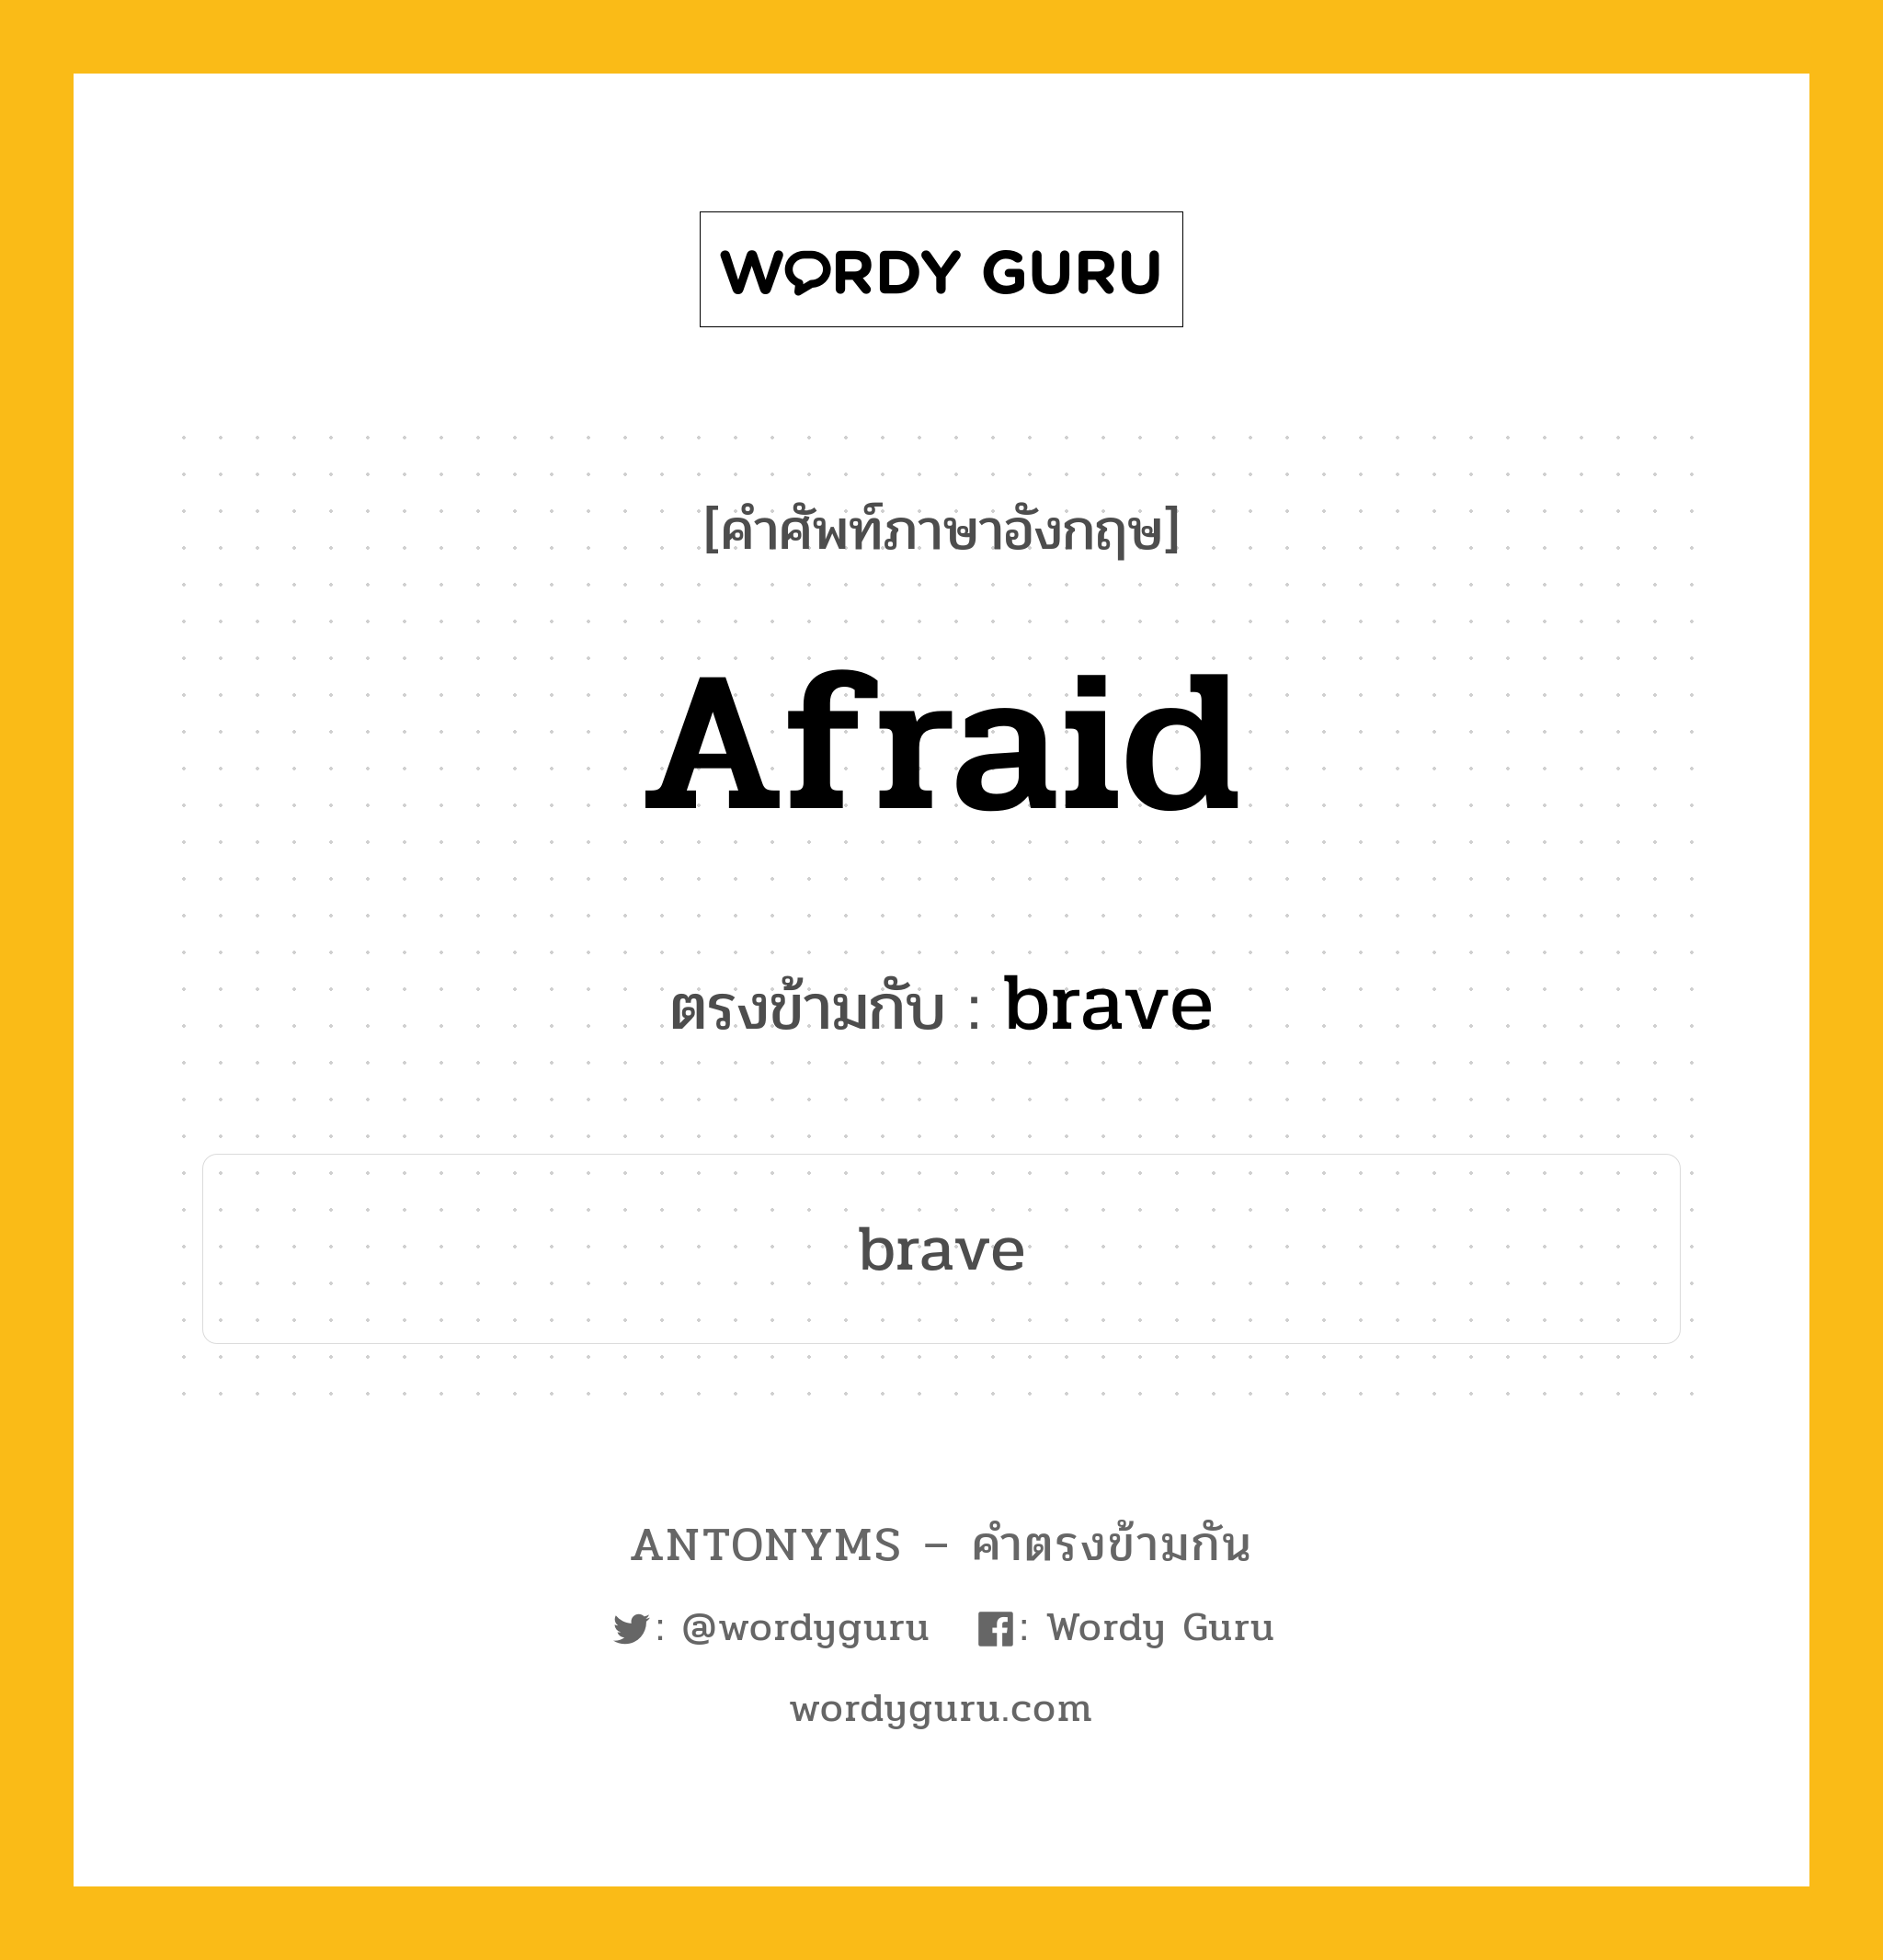 afraid เป็นคำตรงข้ามกับคำไหนบ้าง?, คำศัพท์ภาษาอังกฤษ afraid ตรงข้ามกับ brave หมวด brave